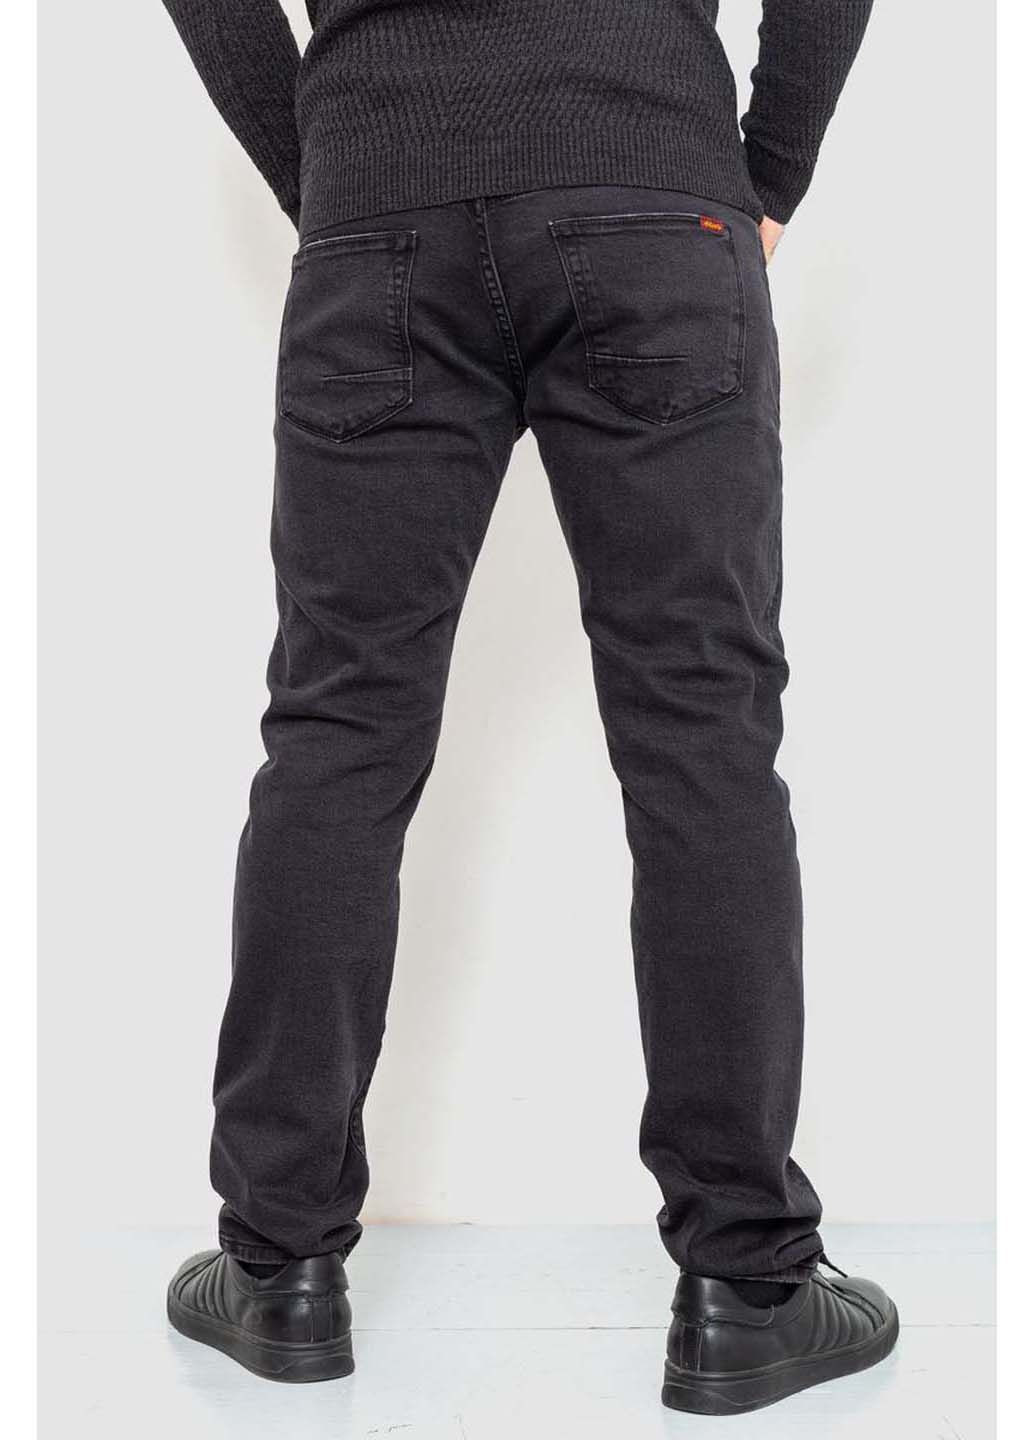 Темно-серые демисезонные джинсы Amitex